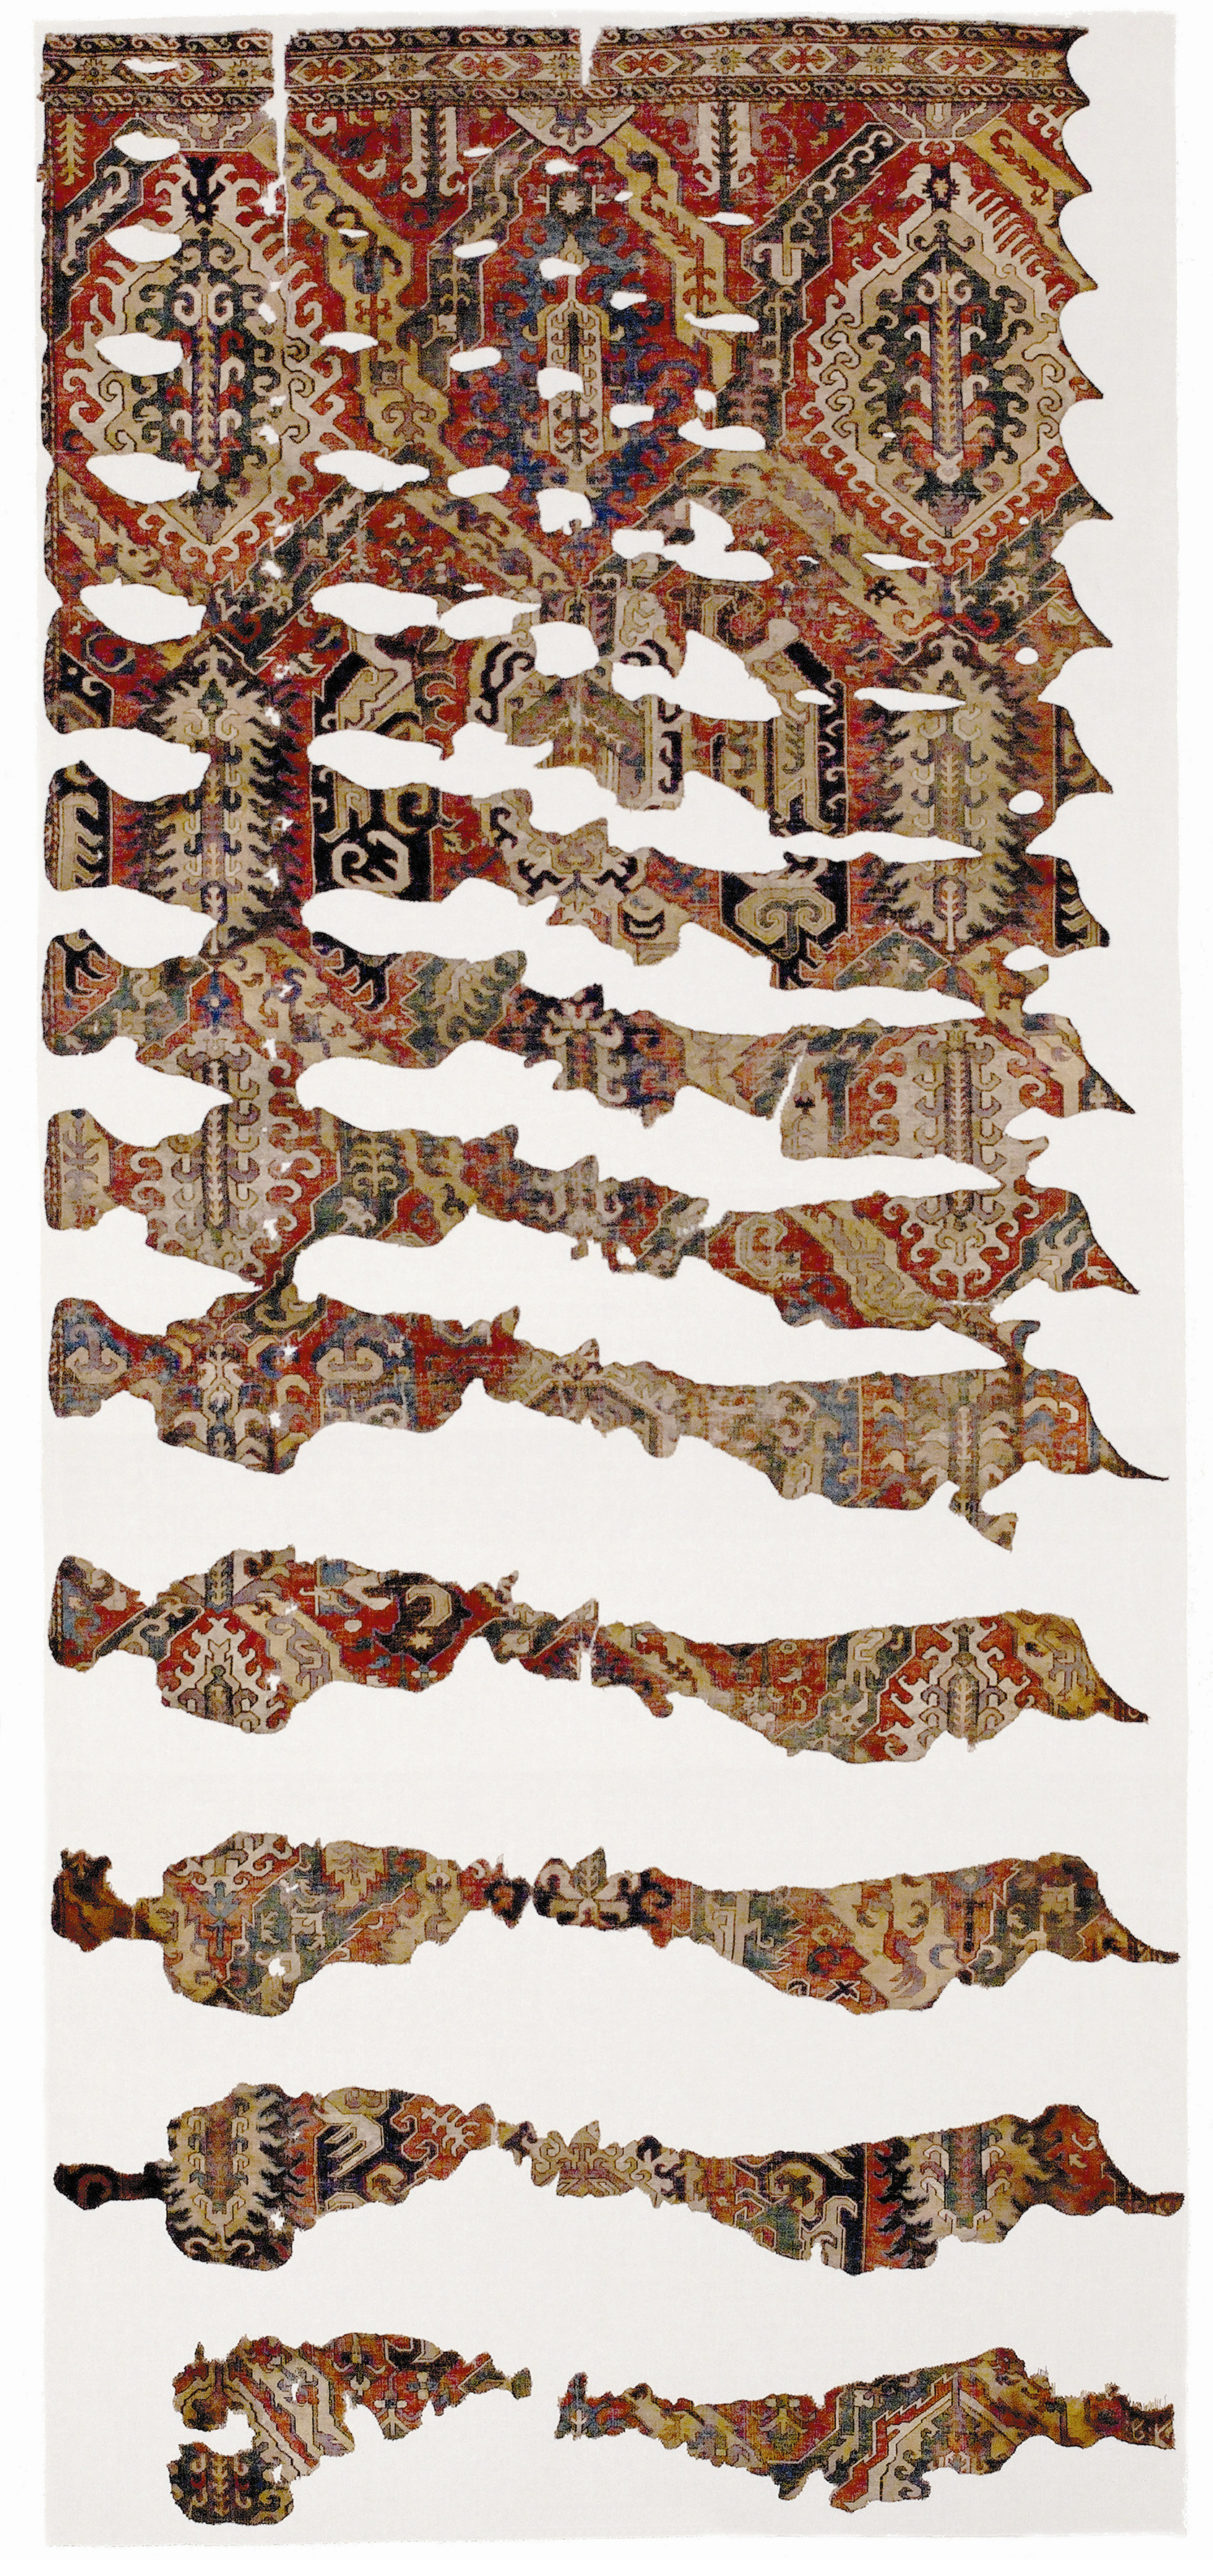 Drachen-Teppich (Brandfragment), Kaukasus, um 1600, Wolle. © Staatliche Museen zu Berlin, Museum für Islamische Kunst / Olaf M. Teßmer